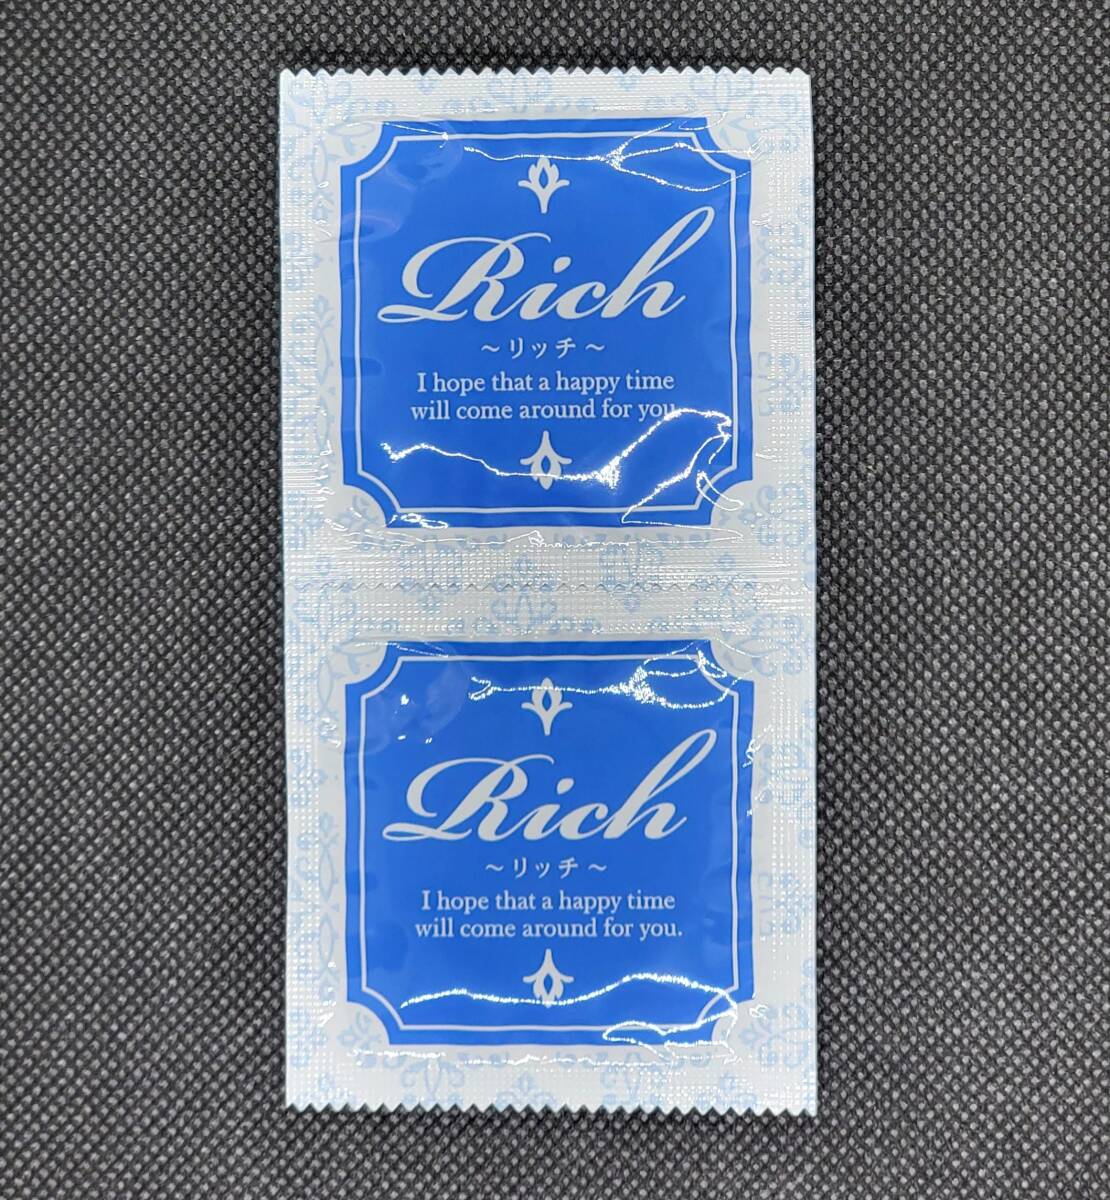 サックス Rich(リッチ) Mサイズ 24個 ジャパンメディカル 業務用コンドーム スキン 避妊具 ゴム_画像4